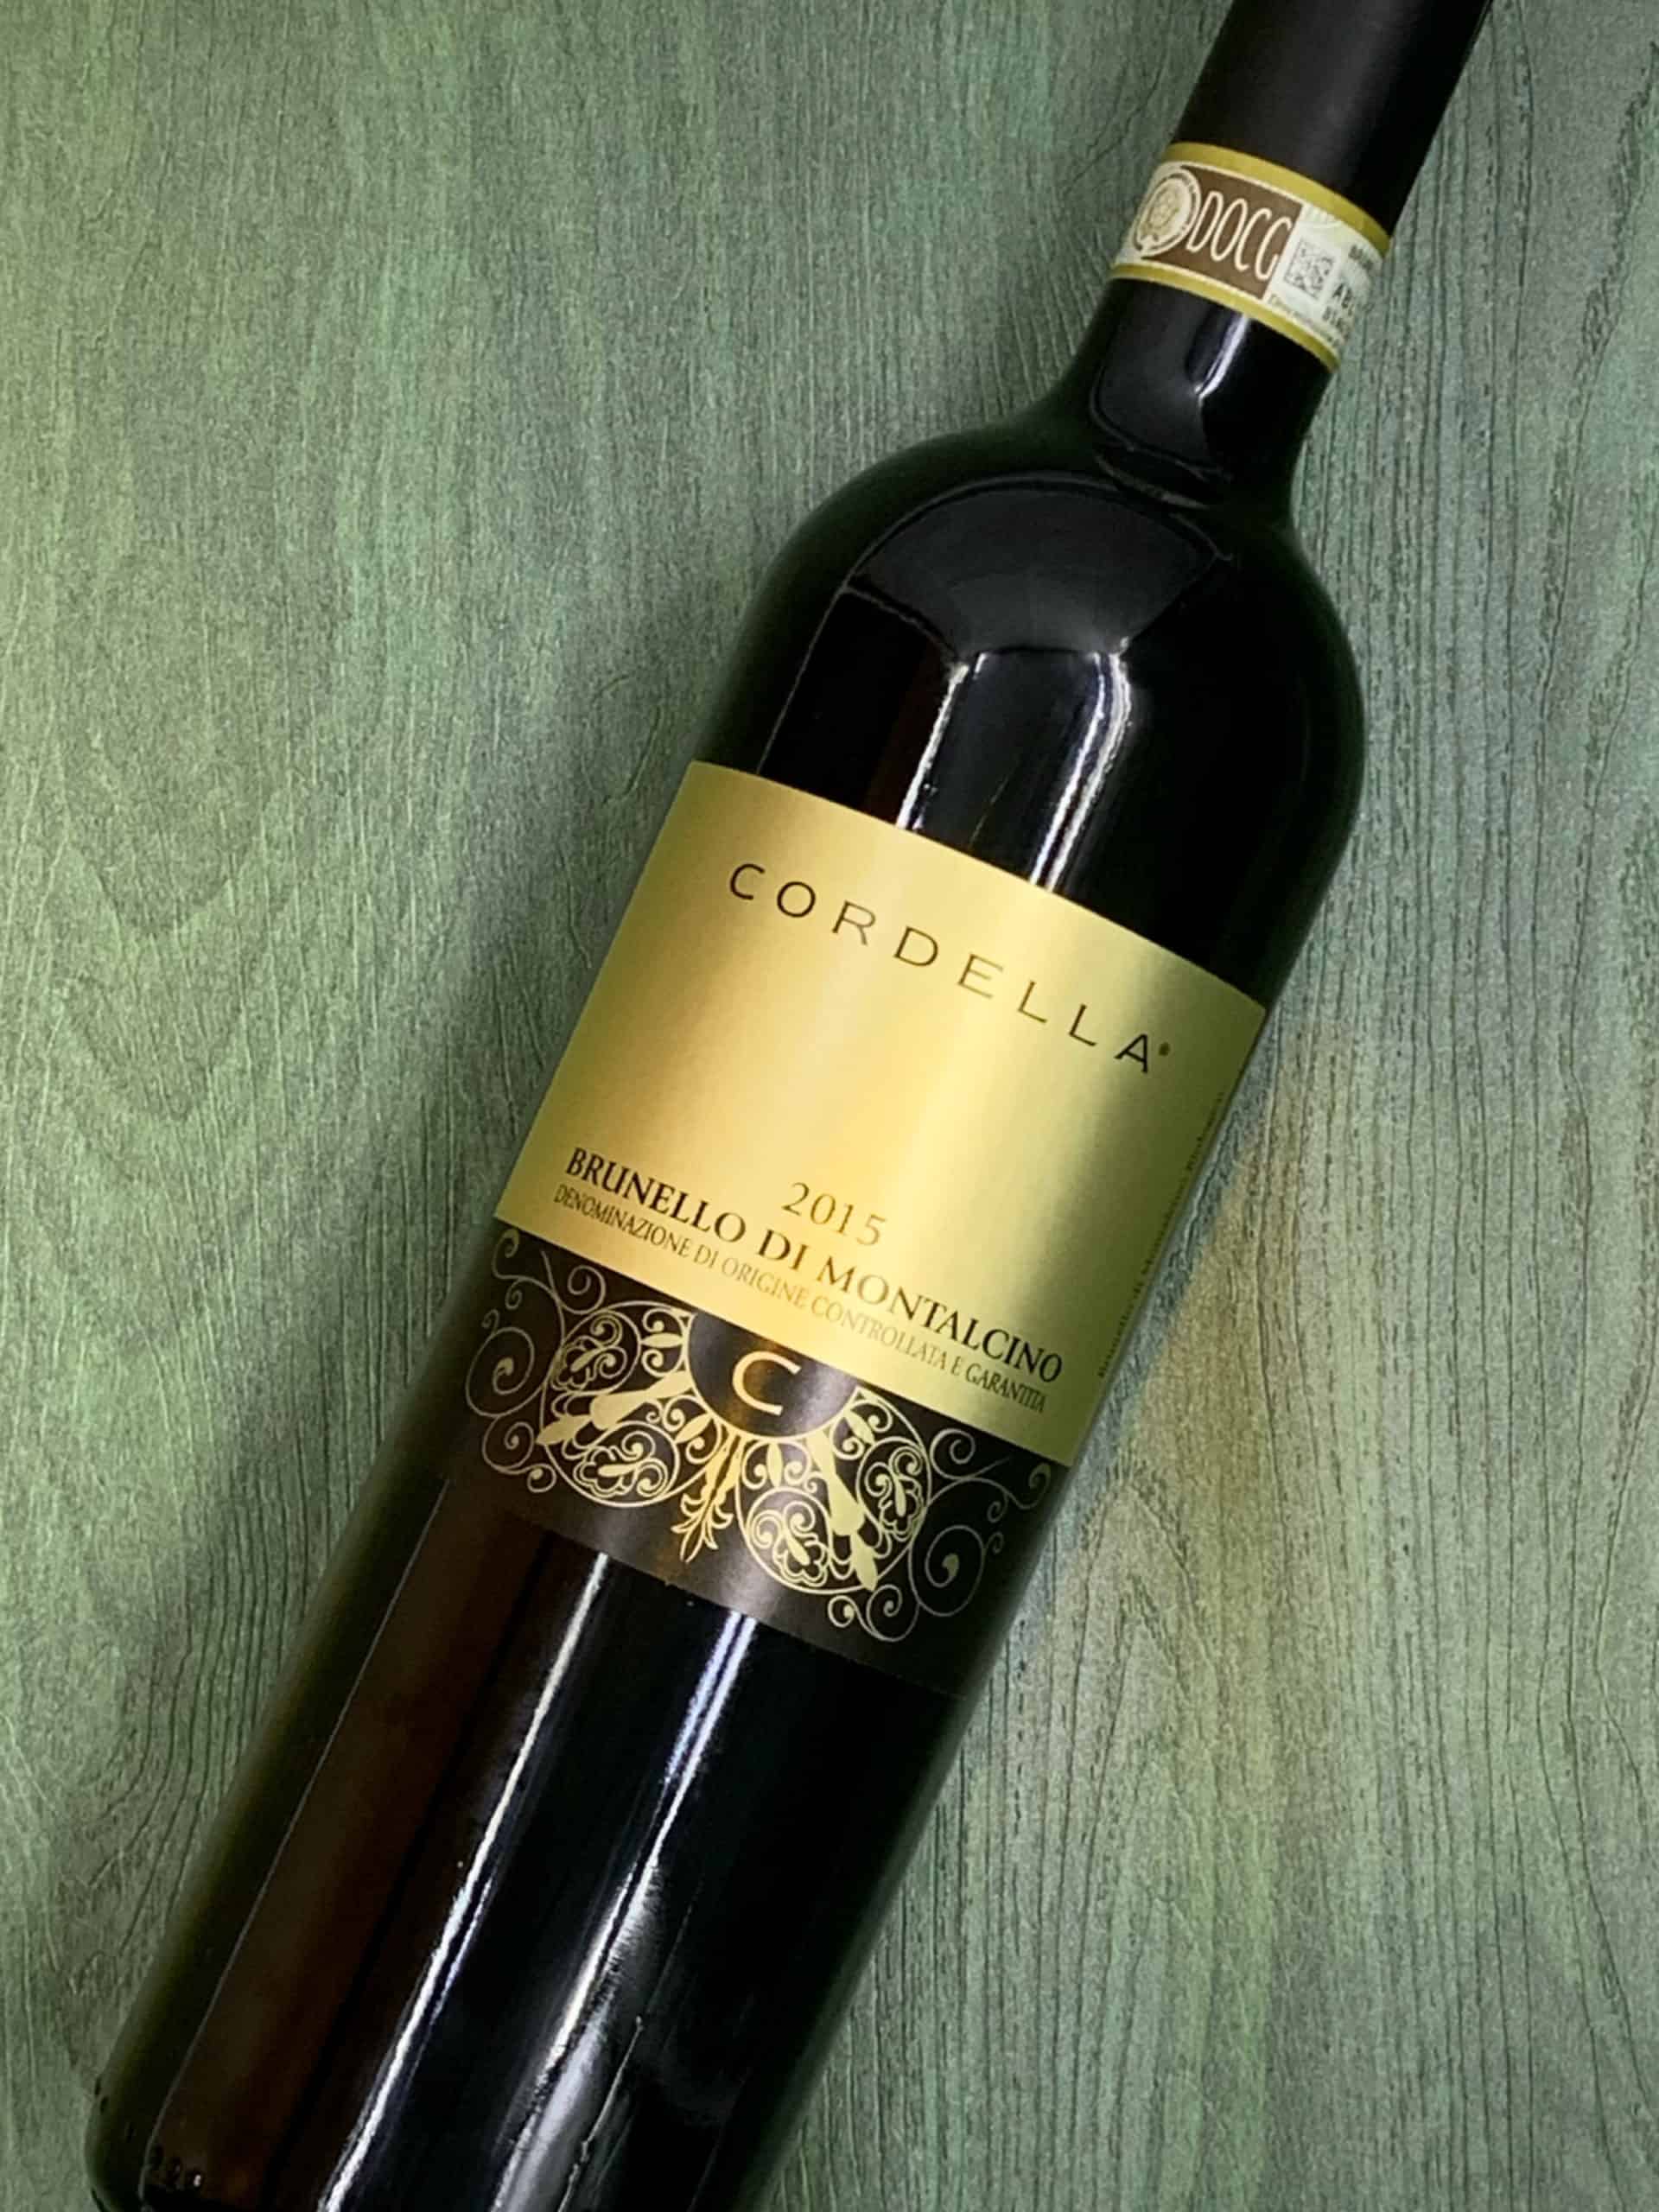 Brunello Di Montalcino DOCG Cordella – 意大利中部紅酒酒皇